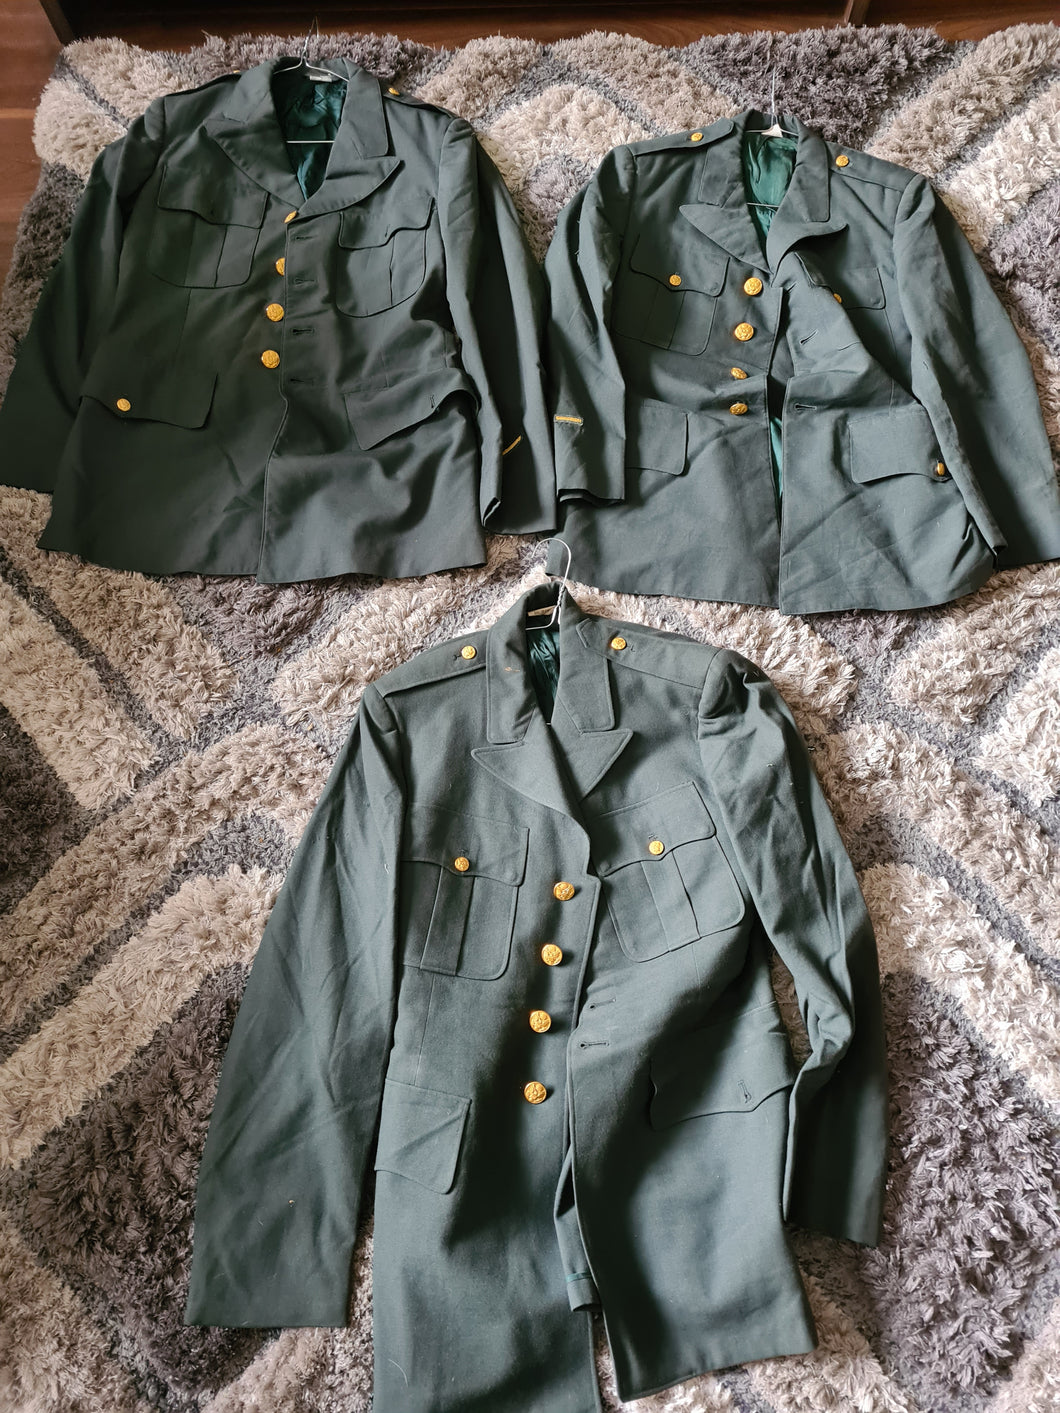 Vietnam war era AG44 Dress jackets